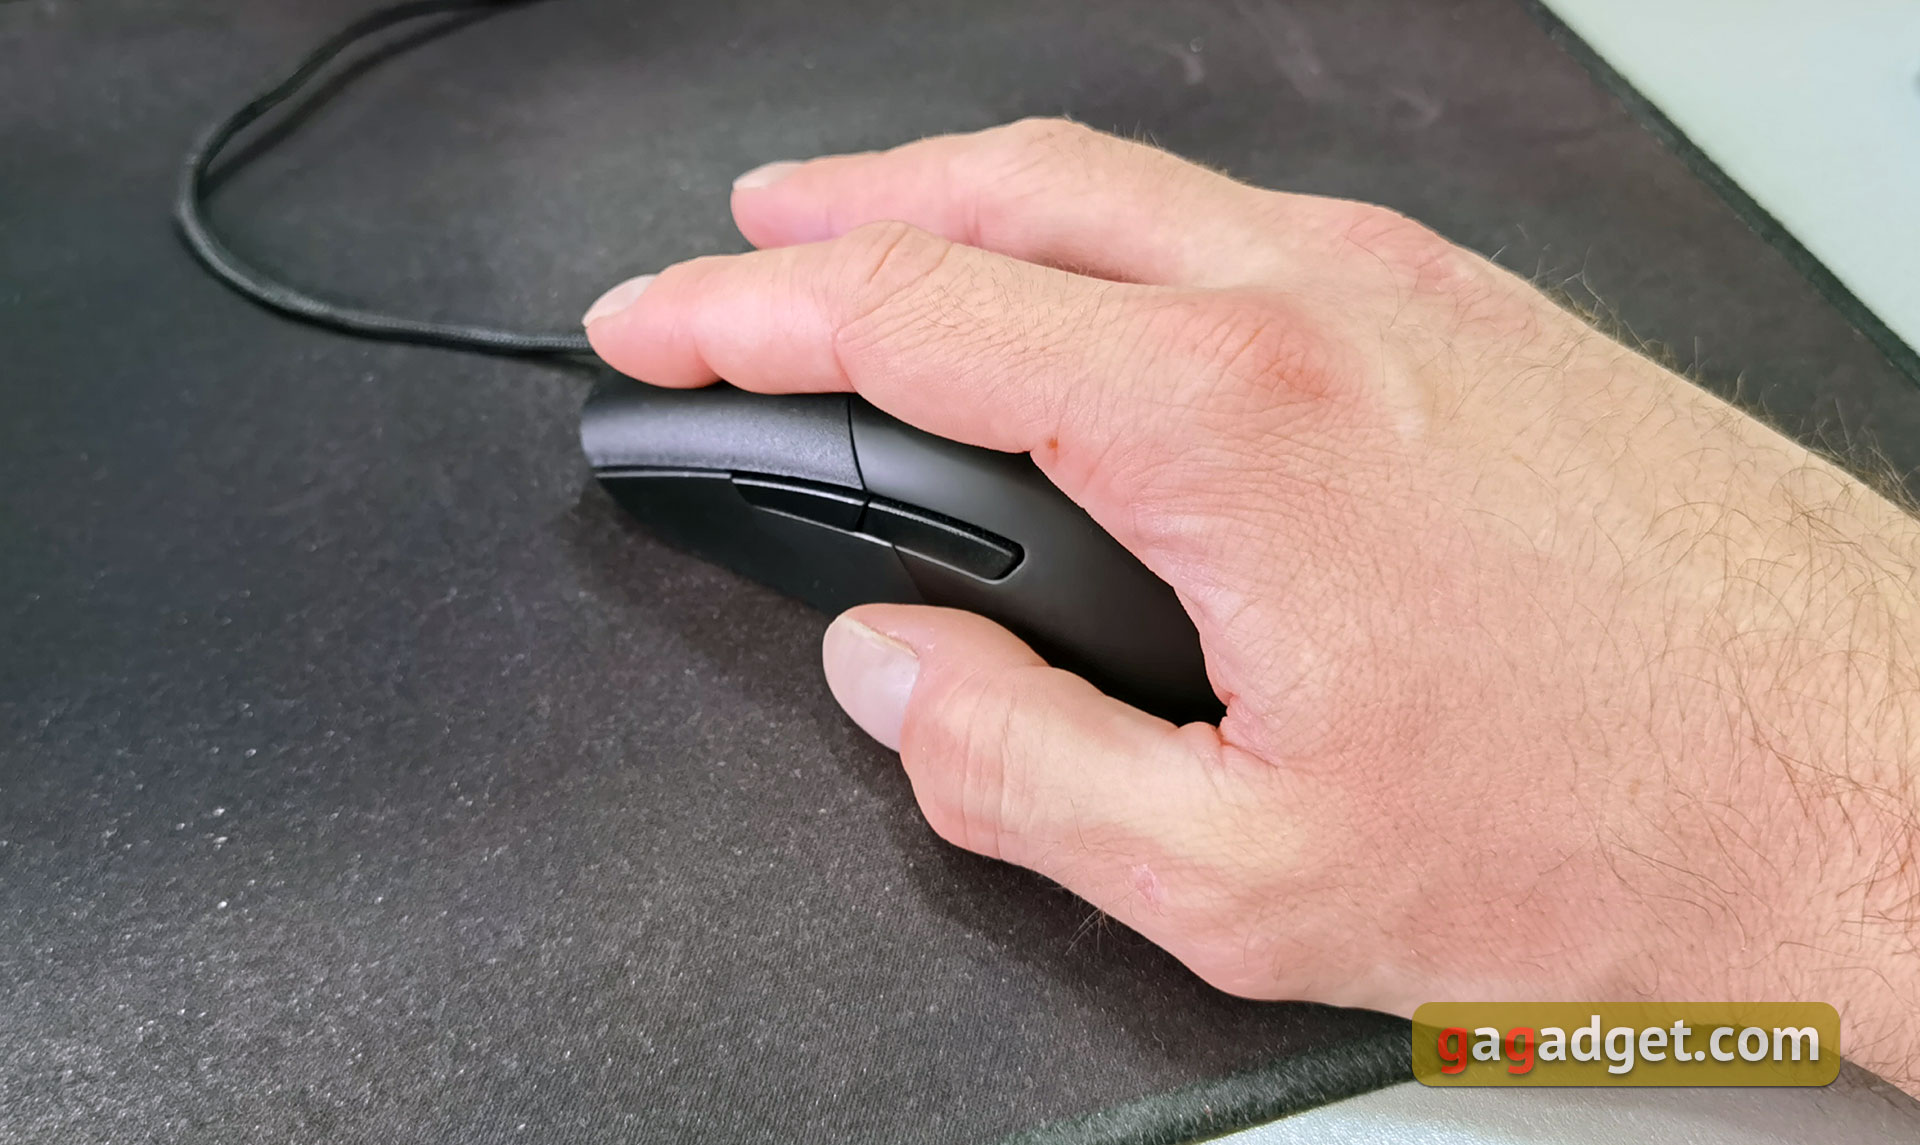 ASUS ROG Keris Überblick: Ultra-leichte Gaming-Maus mit reaktionsschnellem Sensor-16